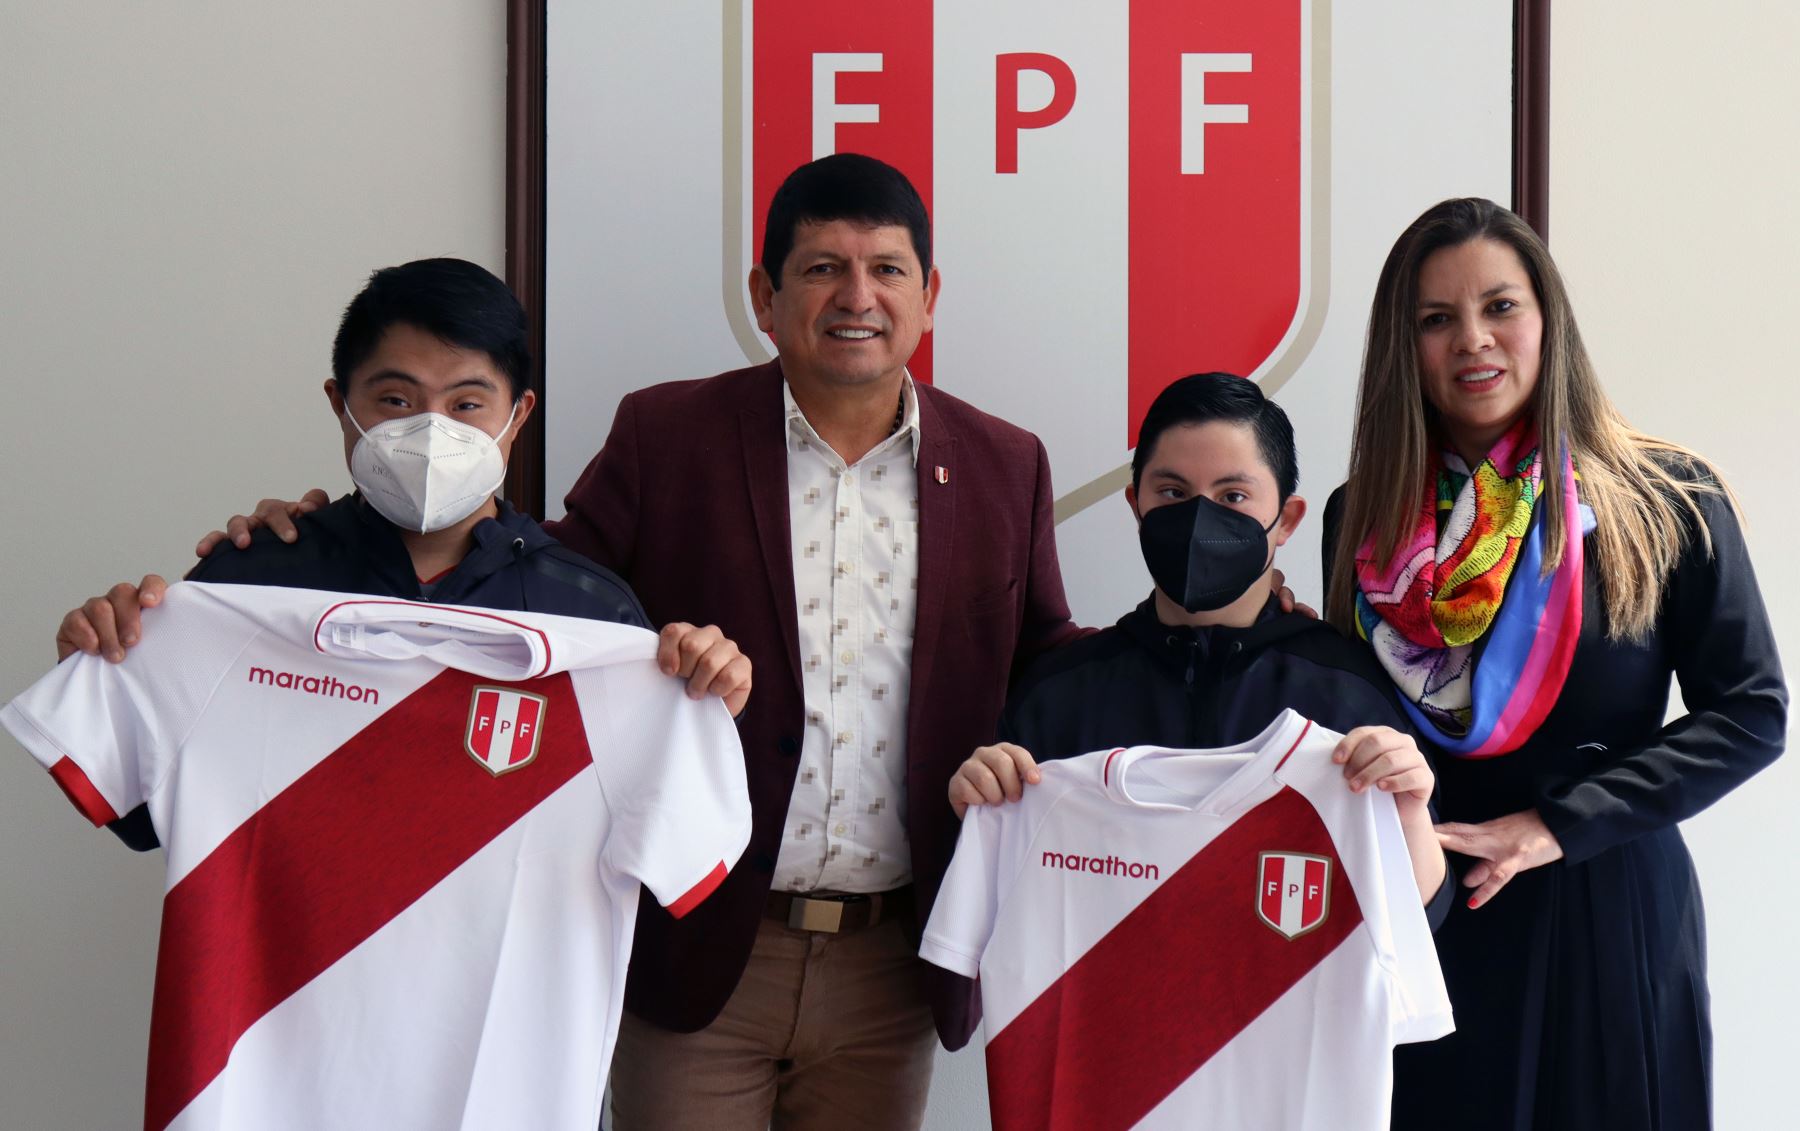 La Federación Peruana de Fútbol firmó un convenio de cooperación con la Asociación Colectivo 21 Perú.